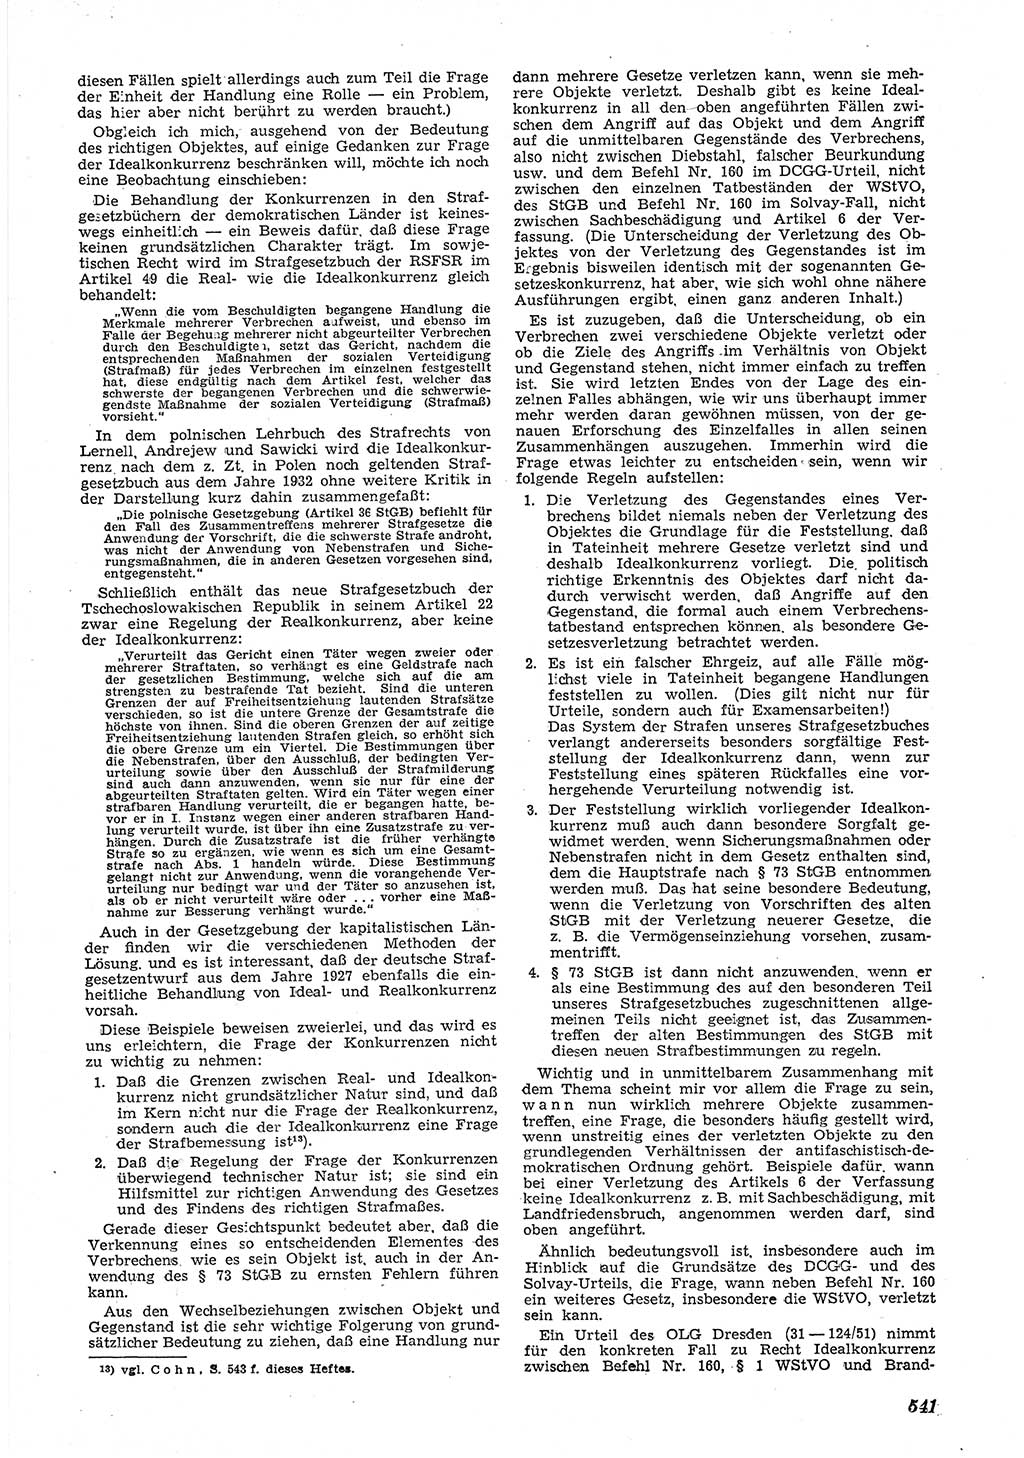 Neue Justiz (NJ), Zeitschrift für Recht und Rechtswissenschaft [Deutsche Demokratische Republik (DDR)], 5. Jahrgang 1951, Seite 541 (NJ DDR 1951, S. 541)